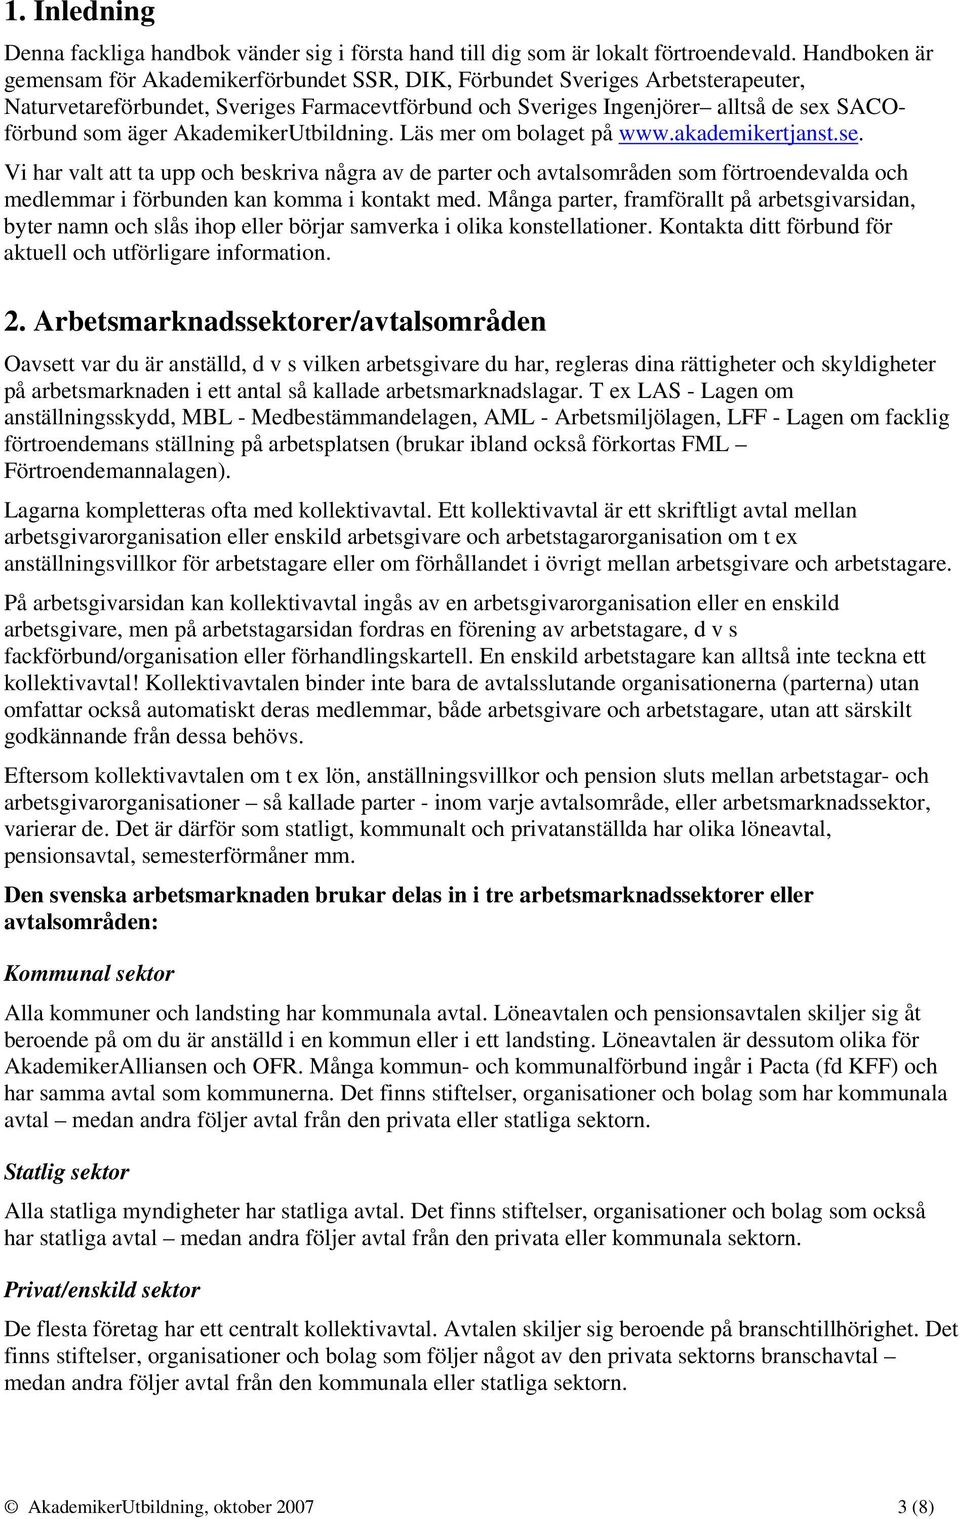 AkademikerUtbildning. Läs mer om bolaget på www.akademikertjanst.se.